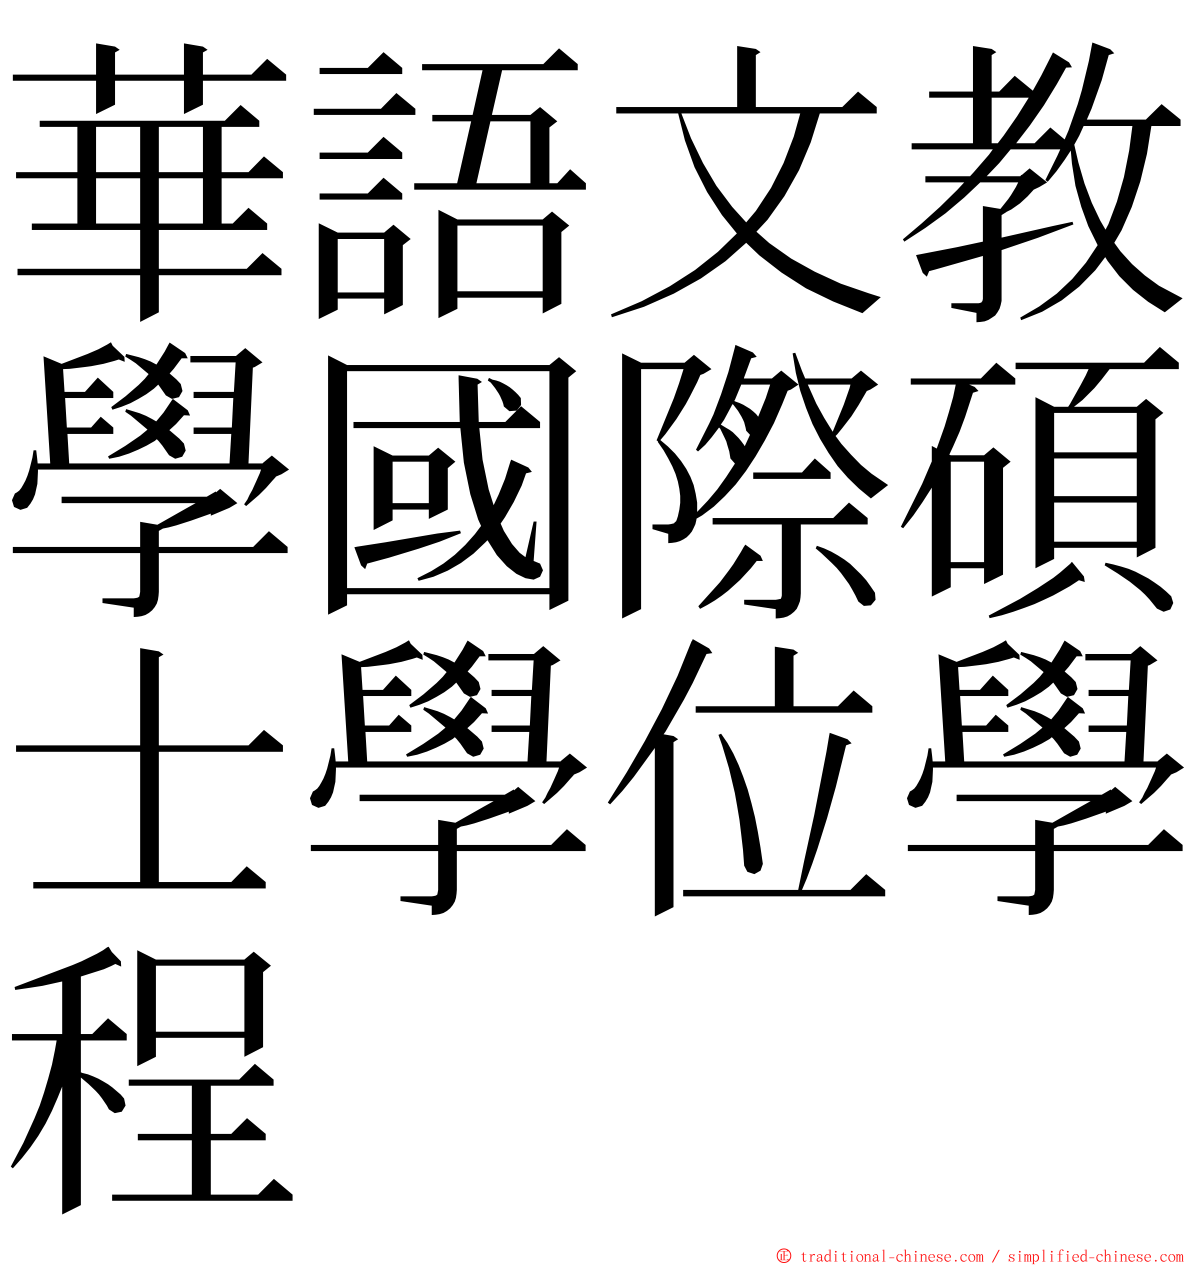 華語文教學國際碩士學位學程 ming font